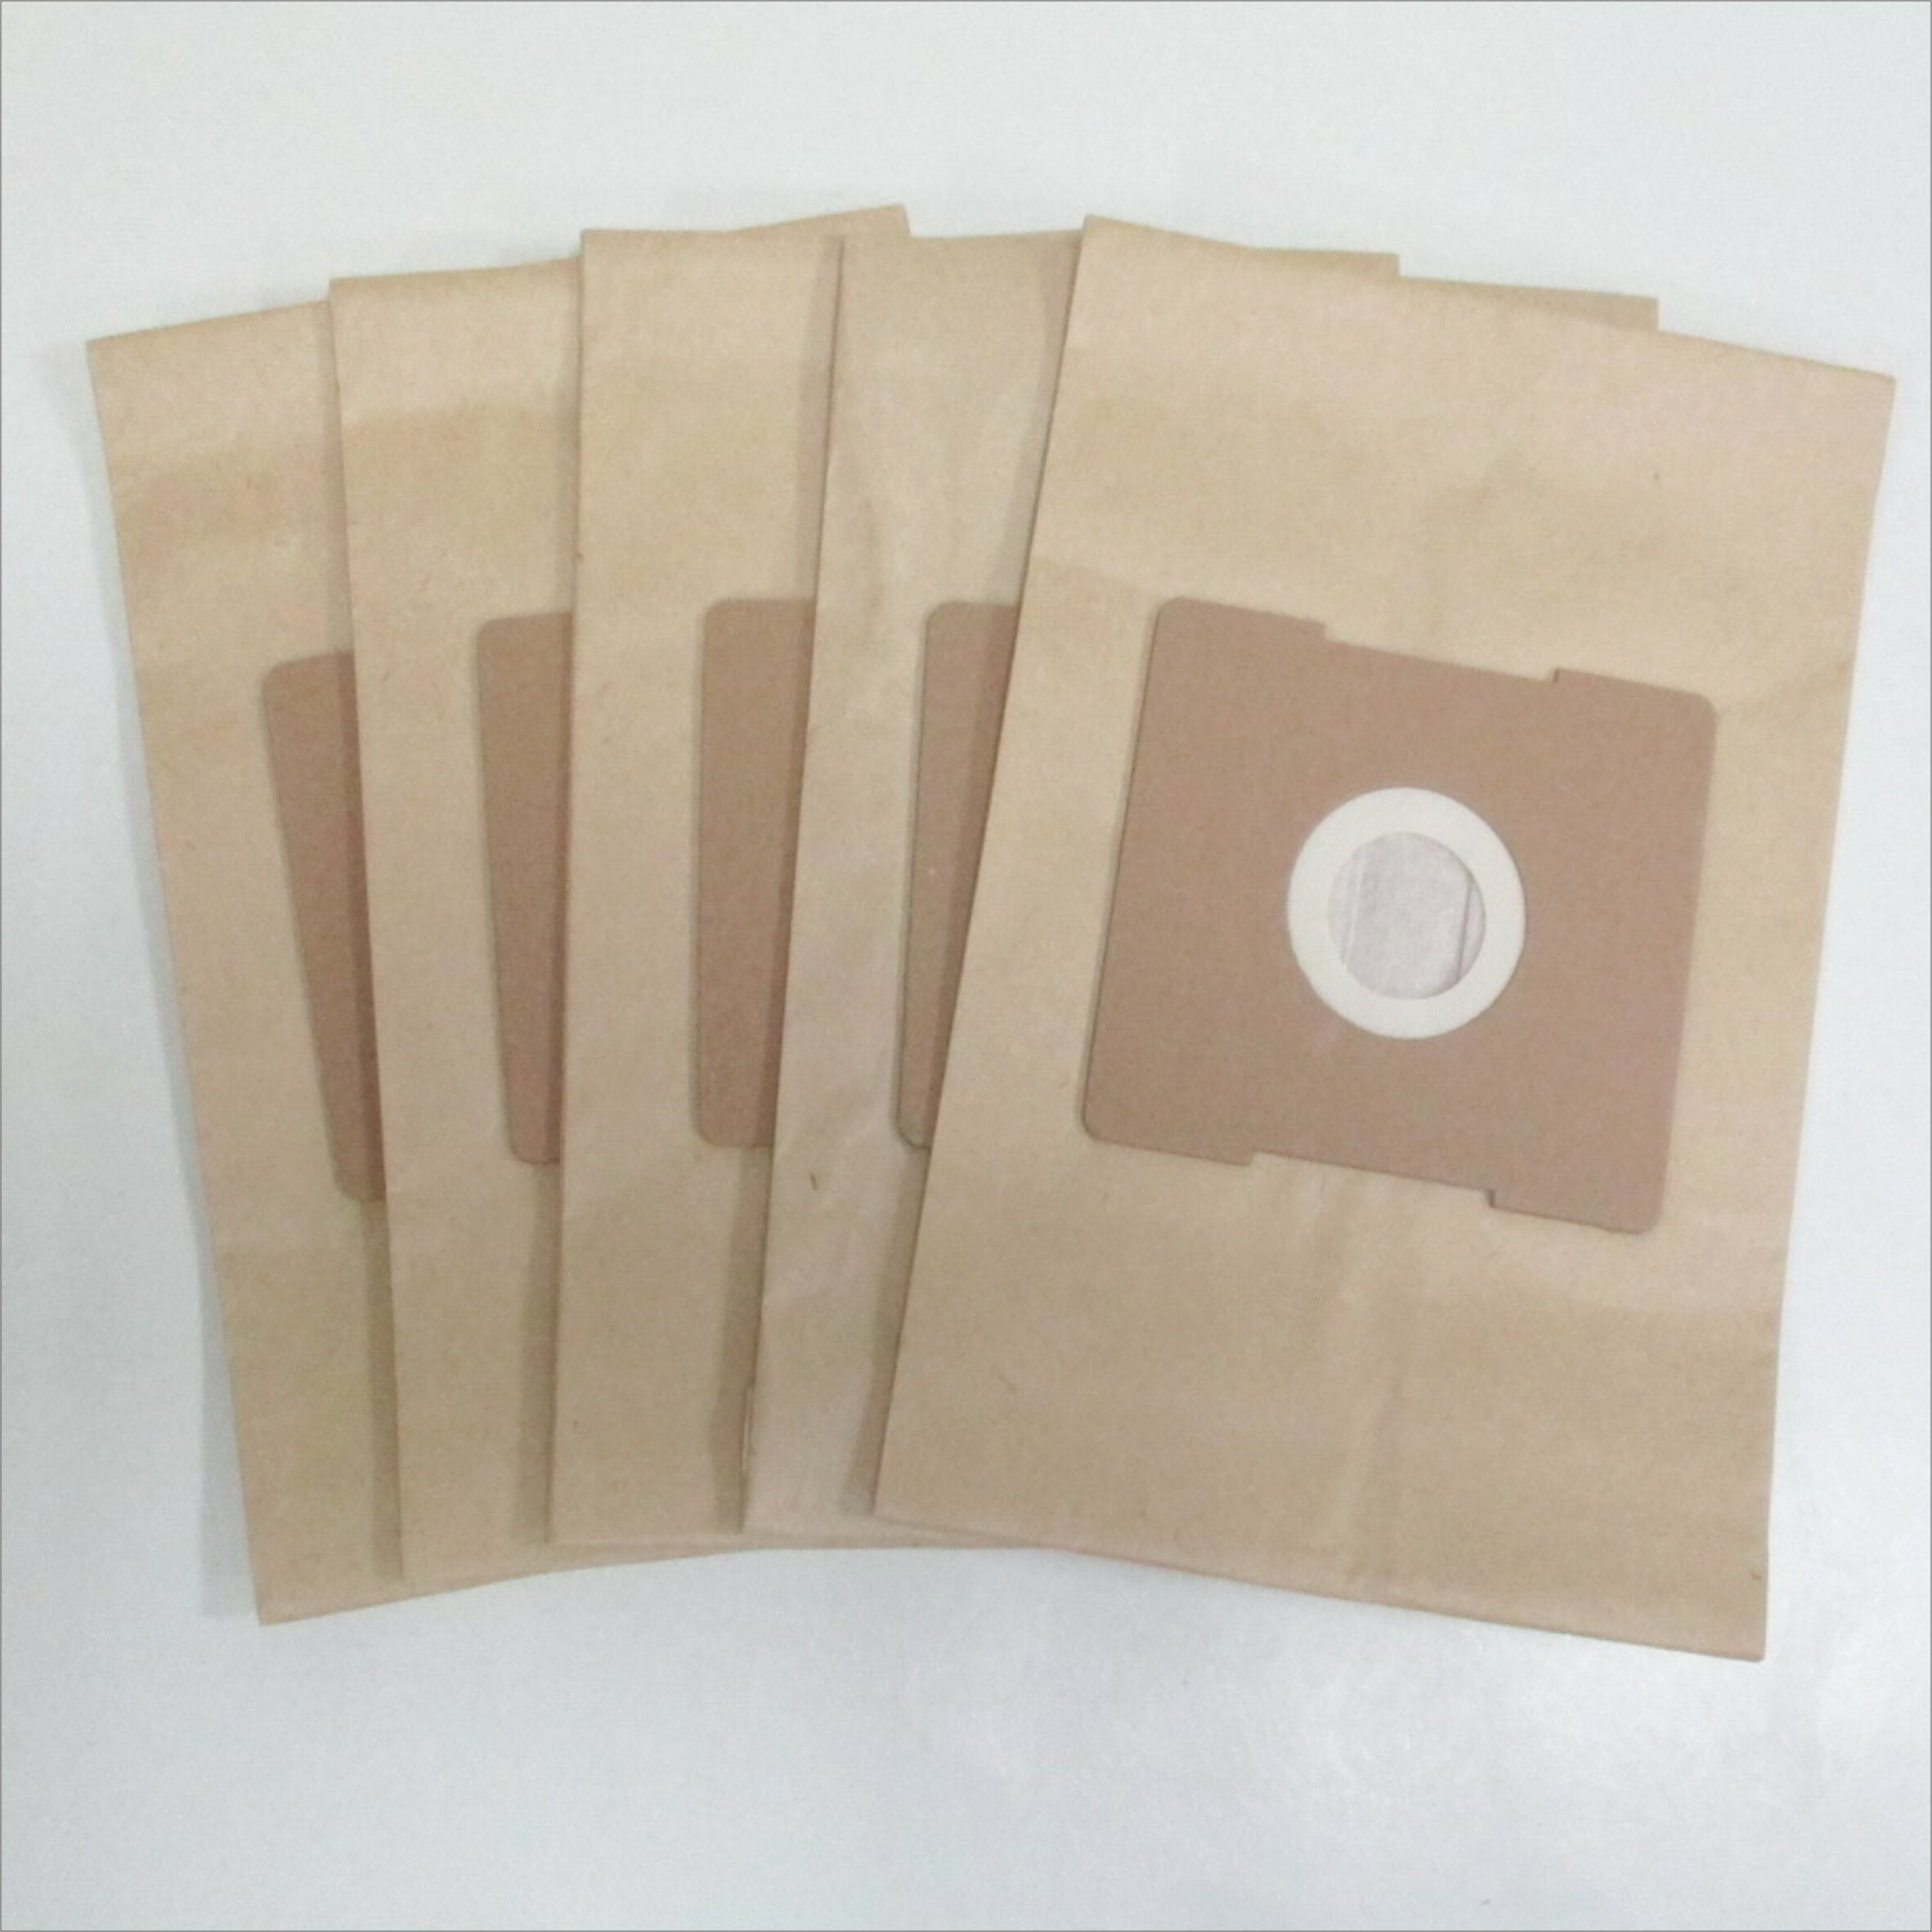 吸塵器集塵袋- 共用款適用於 東元/聲寶/三洋/歌林/印象【居家達人-2A05】